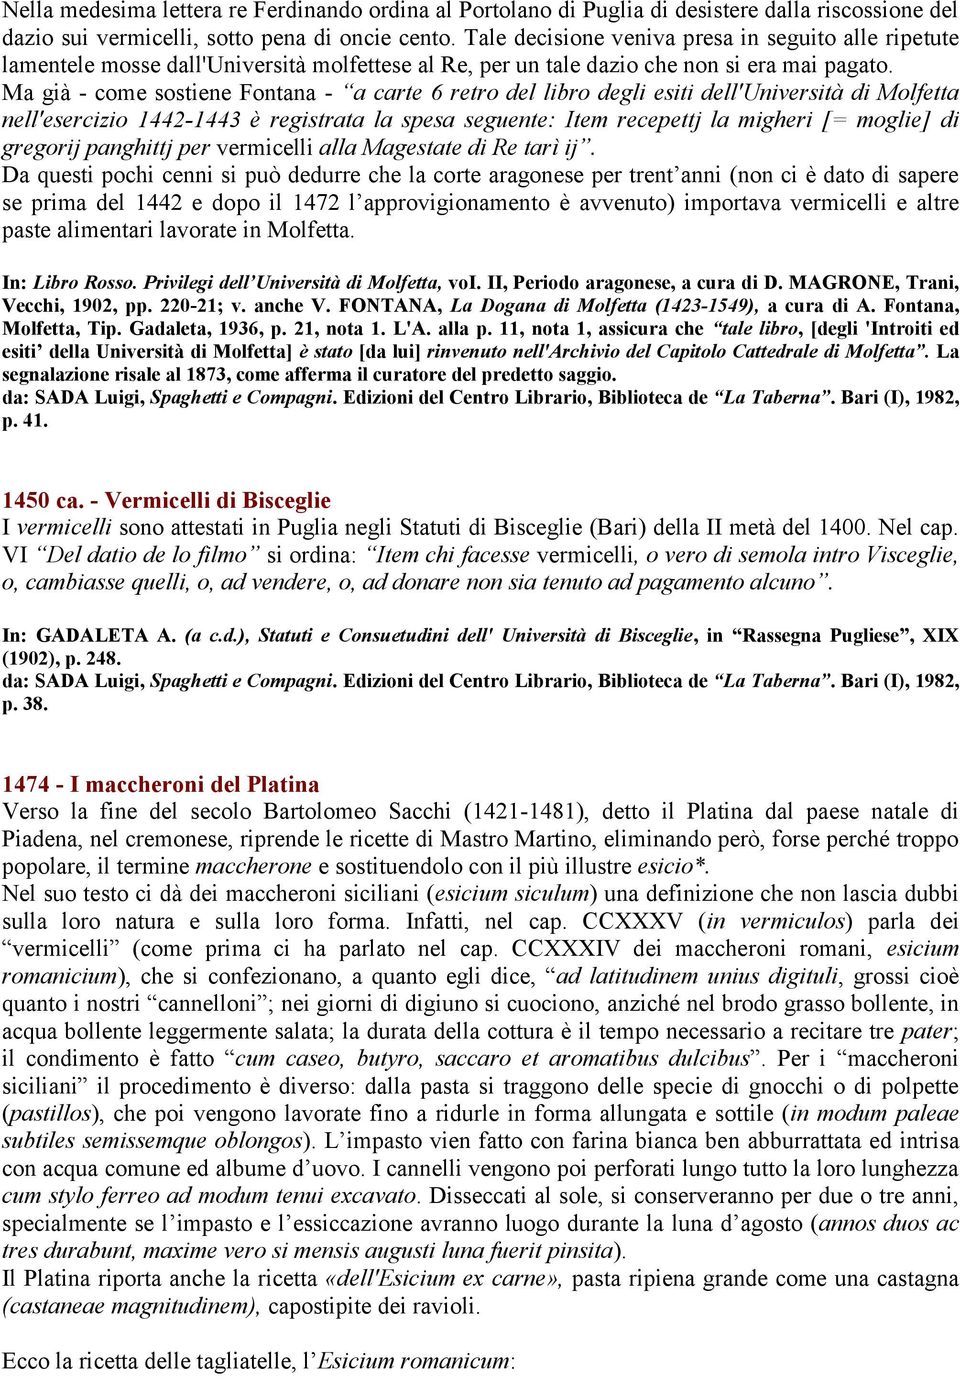 Ma già - come sostiene Fontana - a carte 6 retro del libro degli esiti dell'università di Molfetta nell'esercizio 1442-1443 è registrata la spesa seguente: Item recepettj la migheri [= moglie] di